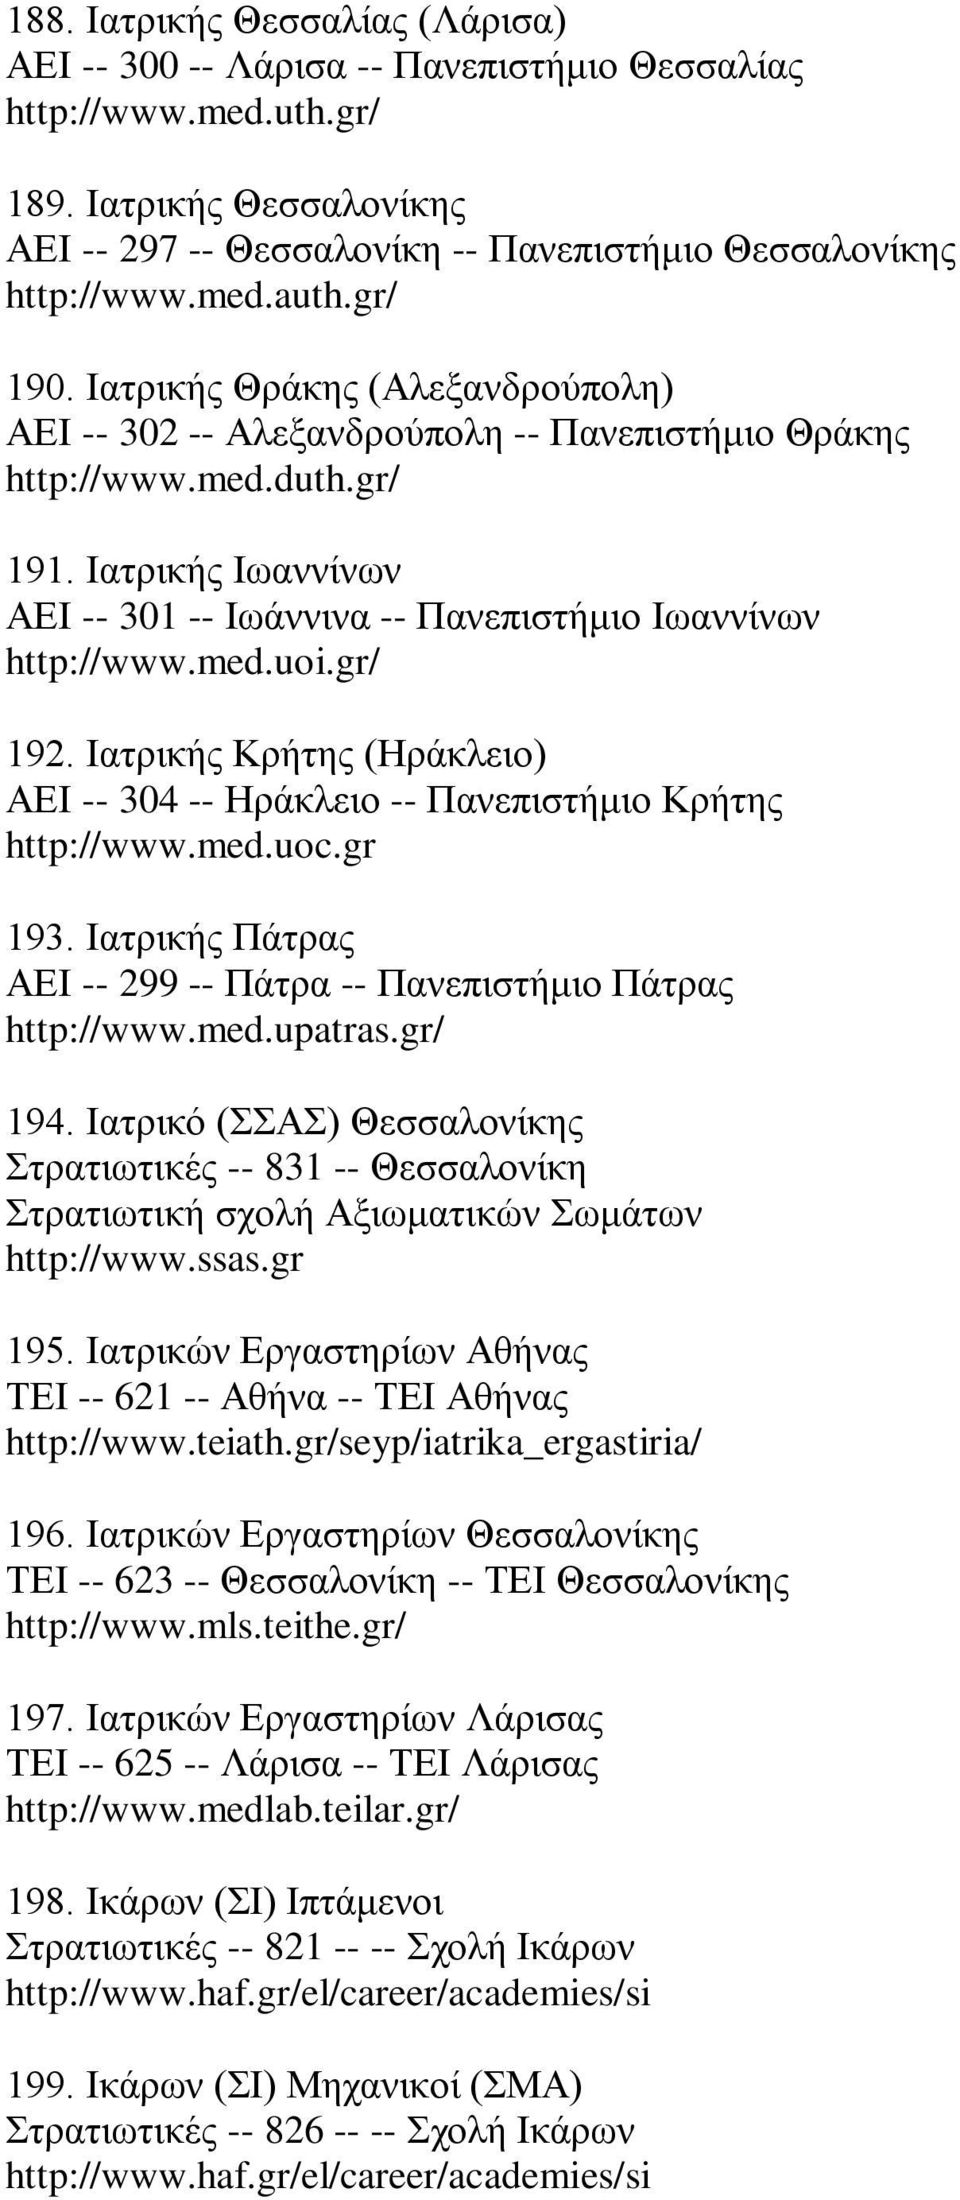 Ιατρικής Ιωαννίνων ΑΕΙ -- 301 -- Ιωάννινα -- Πανεπιστήμιο Ιωαννίνων http://www.med.uoi.gr/ 192. Ιατρικής Κρήτης (Ηράκλειο) ΑΕΙ -- 304 -- Ηράκλειο -- Πανεπιστήμιο Κρήτης http://www.med.uoc.gr 193.